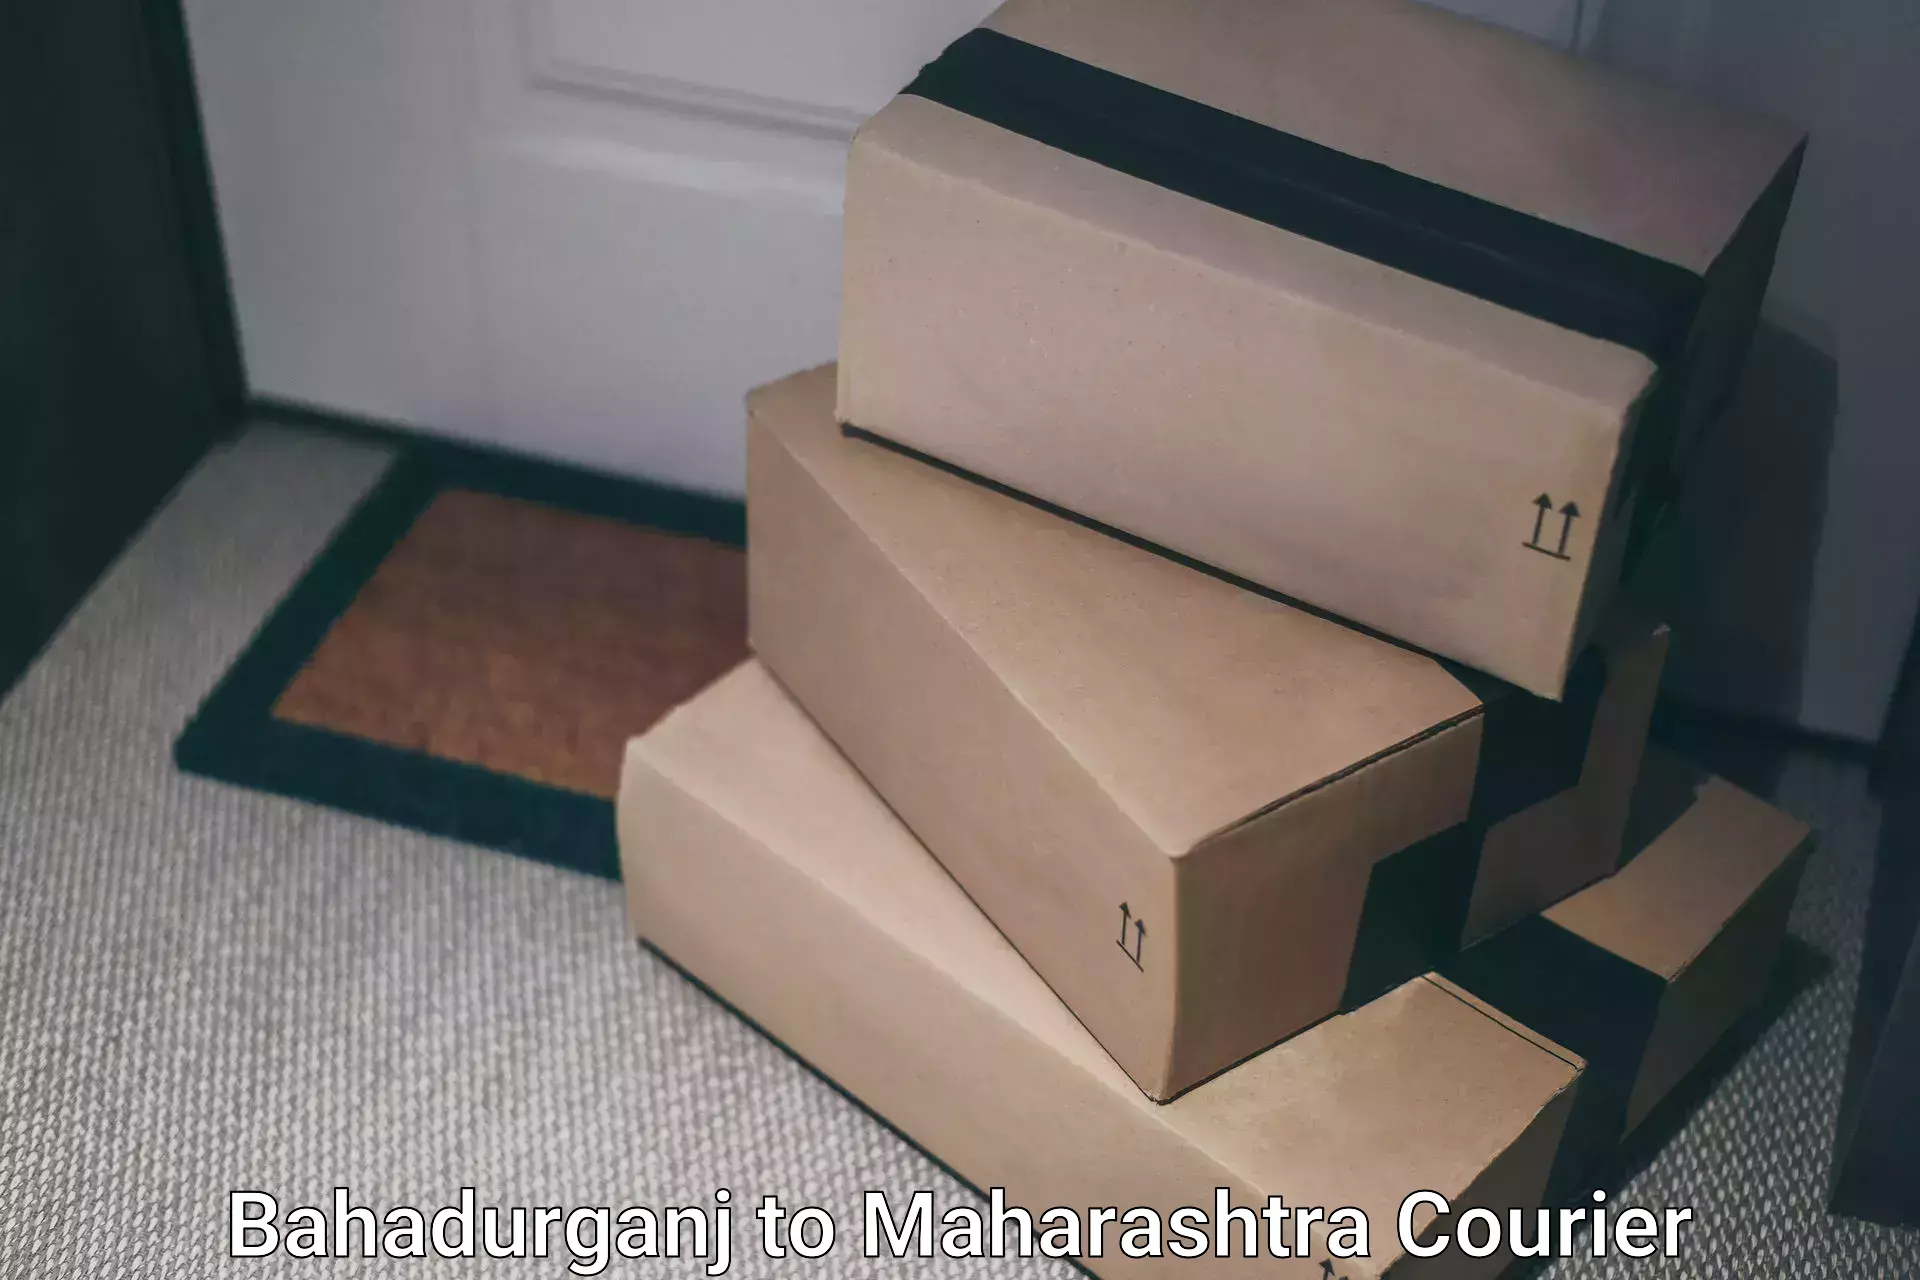 Local delivery service Bahadurganj to Maharashtra